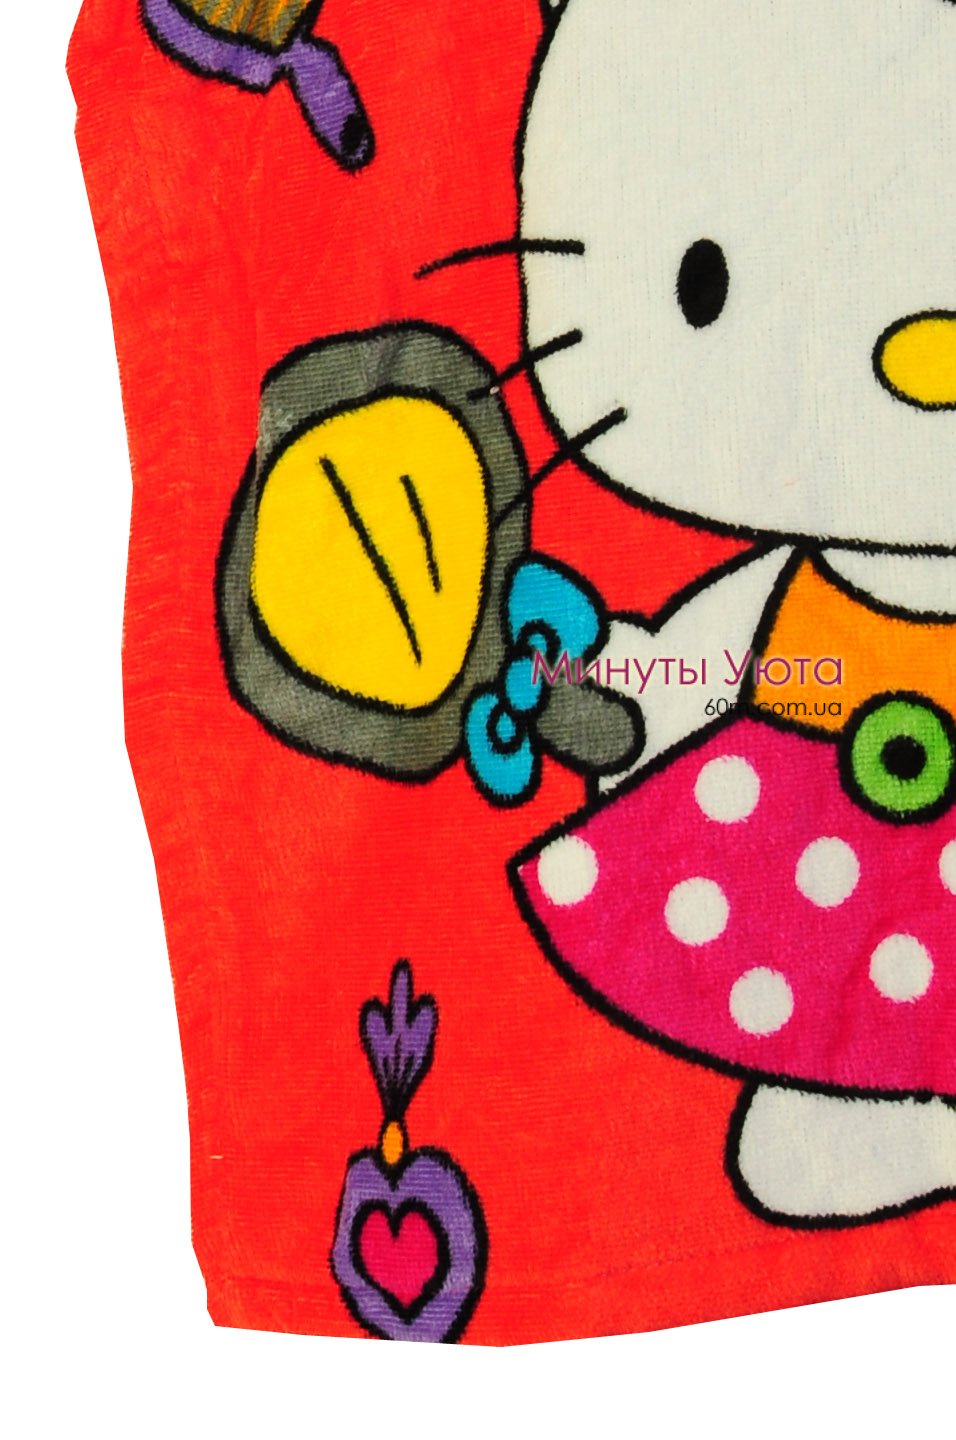 Пляжное полотенце-пончо Hello Kitty Turkey